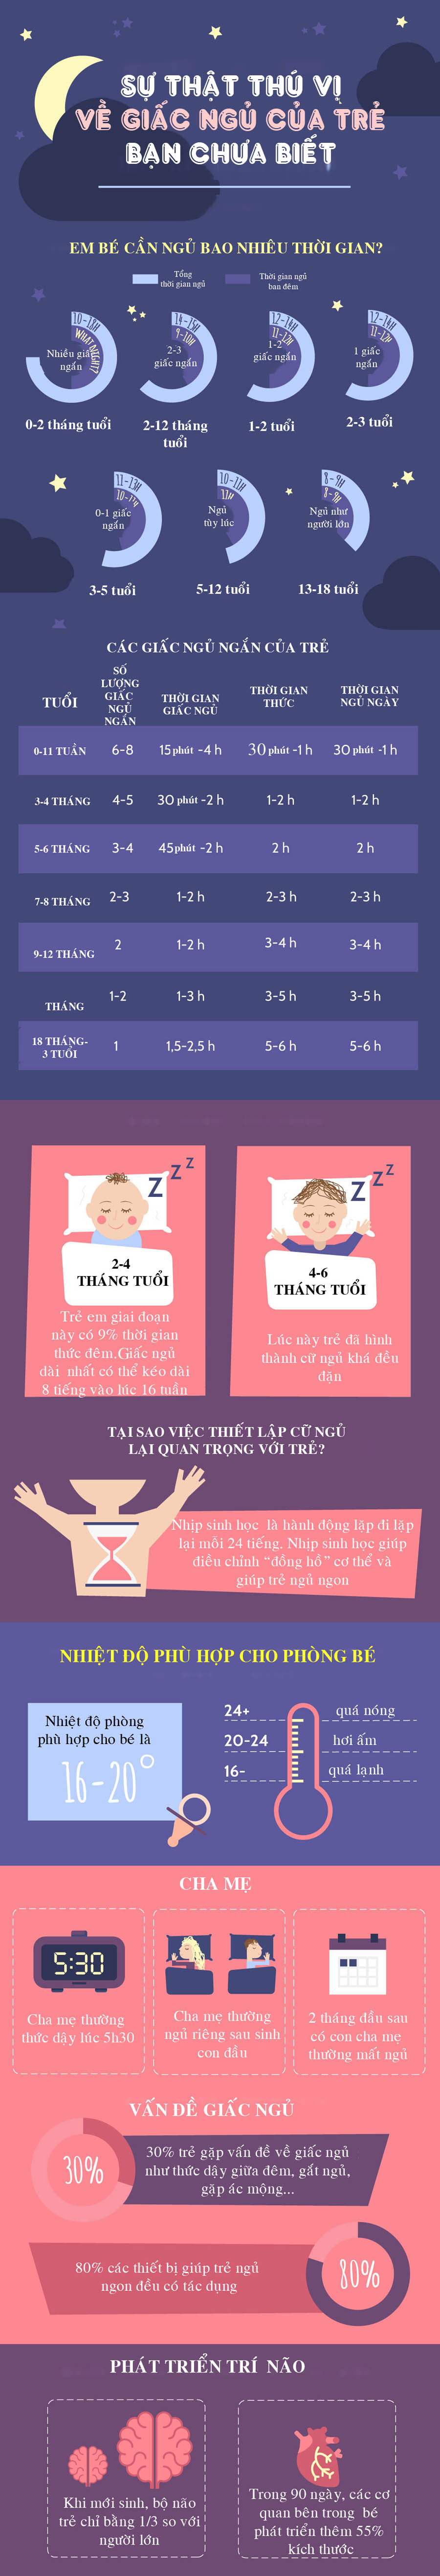 Những điều thú vị về giấc ngủ của trẻ mà cha mẹ chưa biết - 1